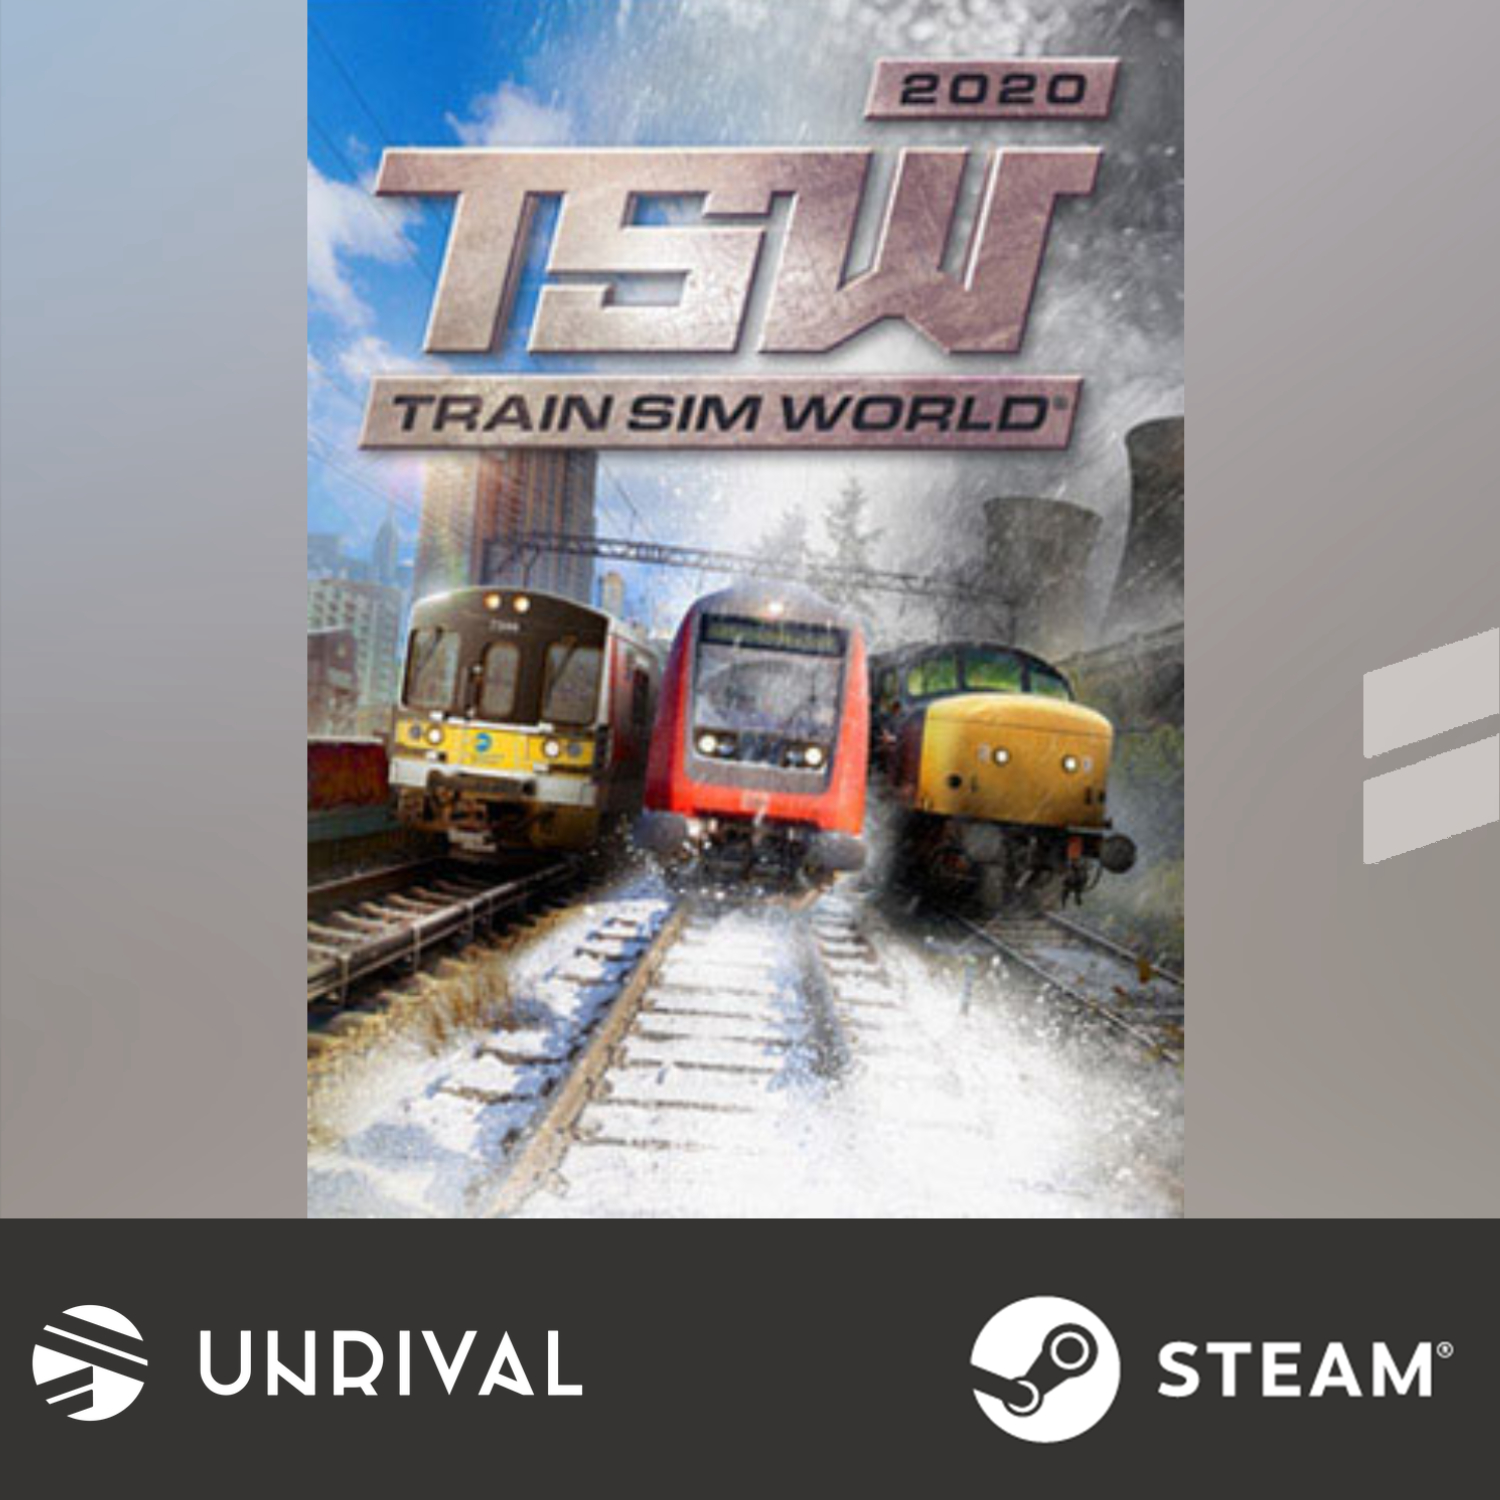 Train Sim World® 2020 PC Digital Download Game - Unrival